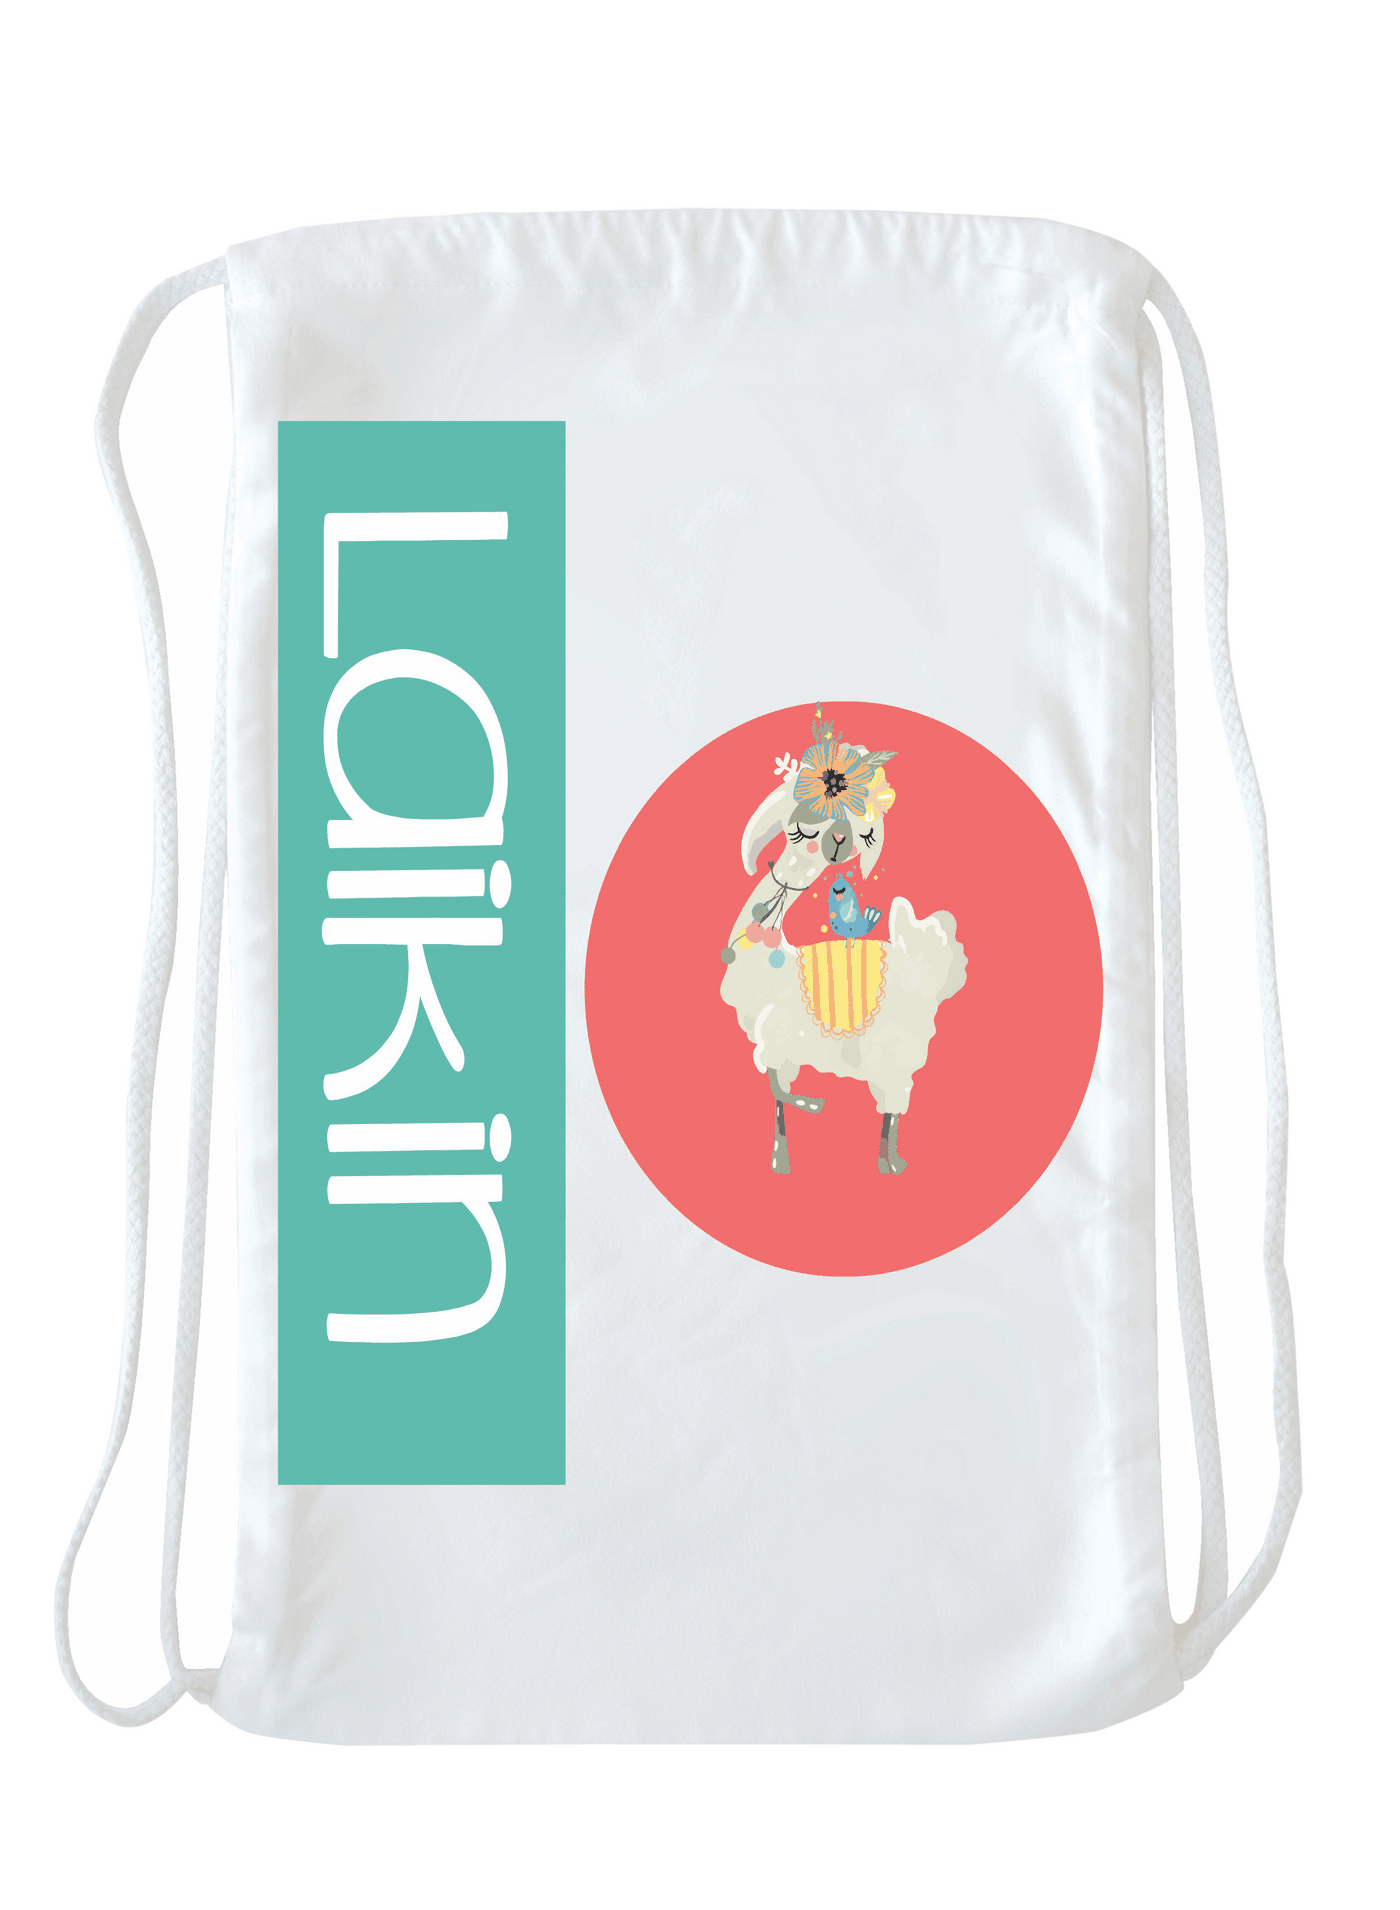 Llama - Laikin Bag